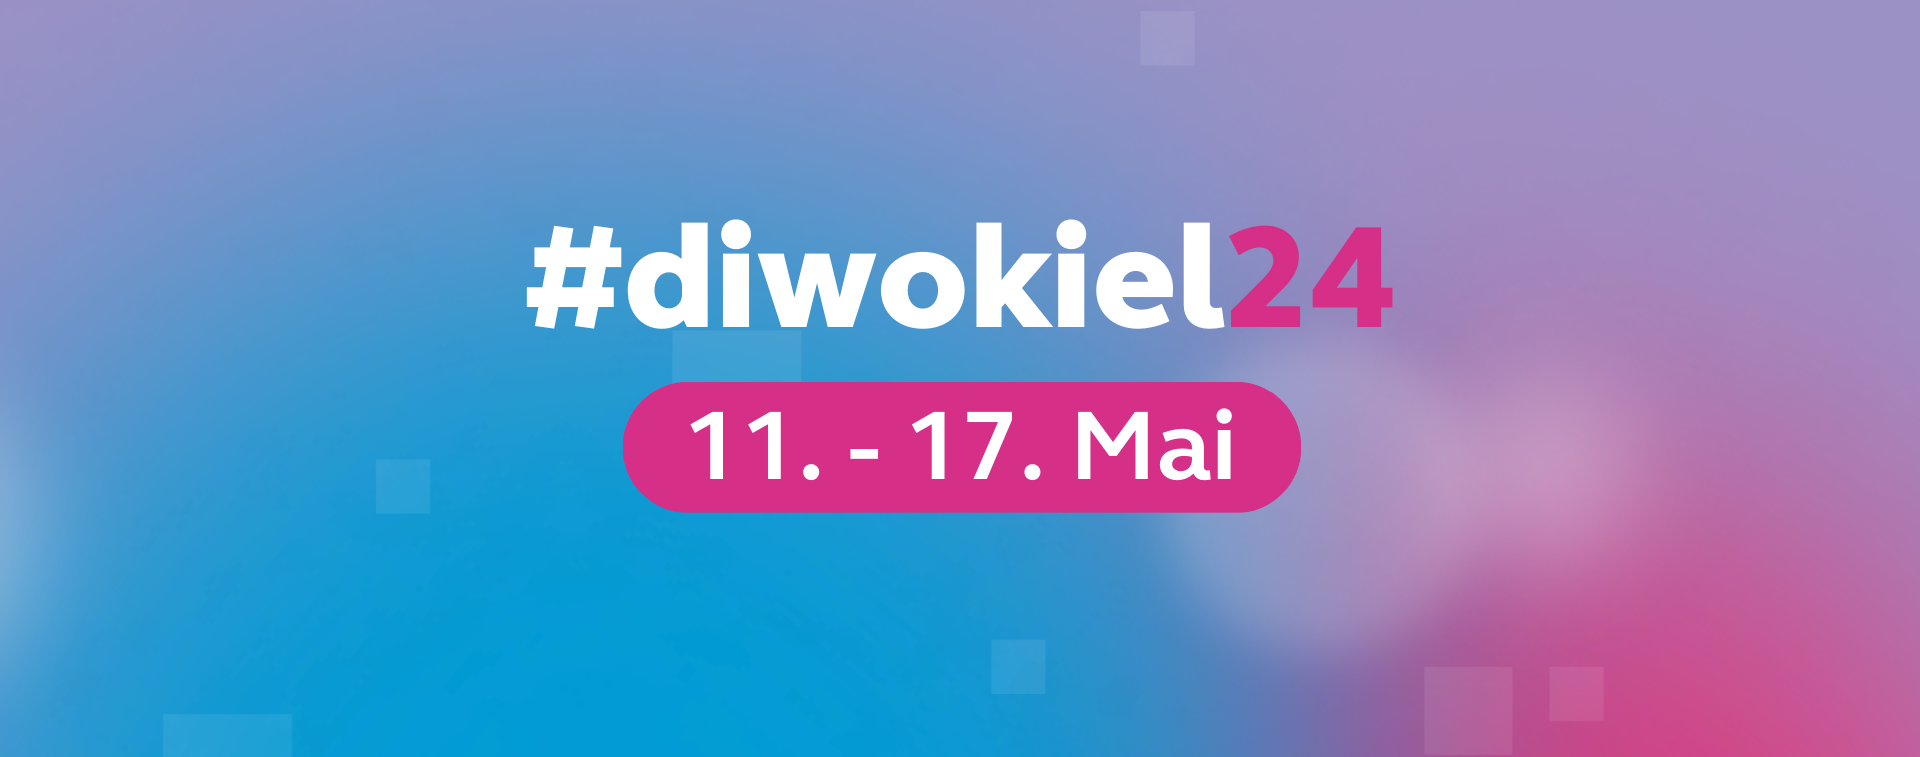 #diwokiel24